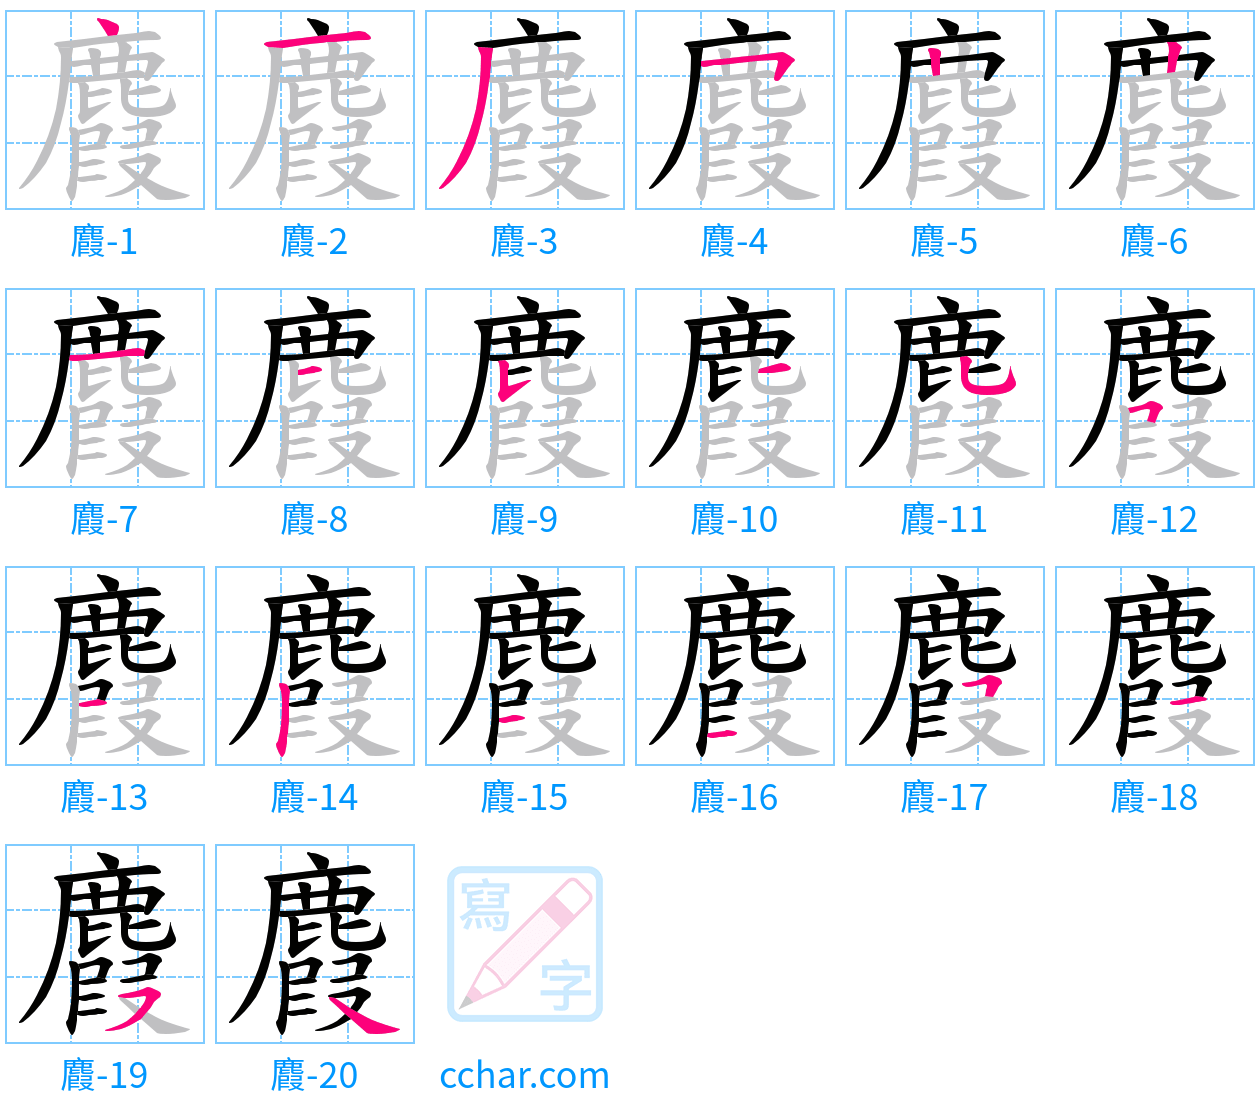 麚 stroke order step-by-step diagram